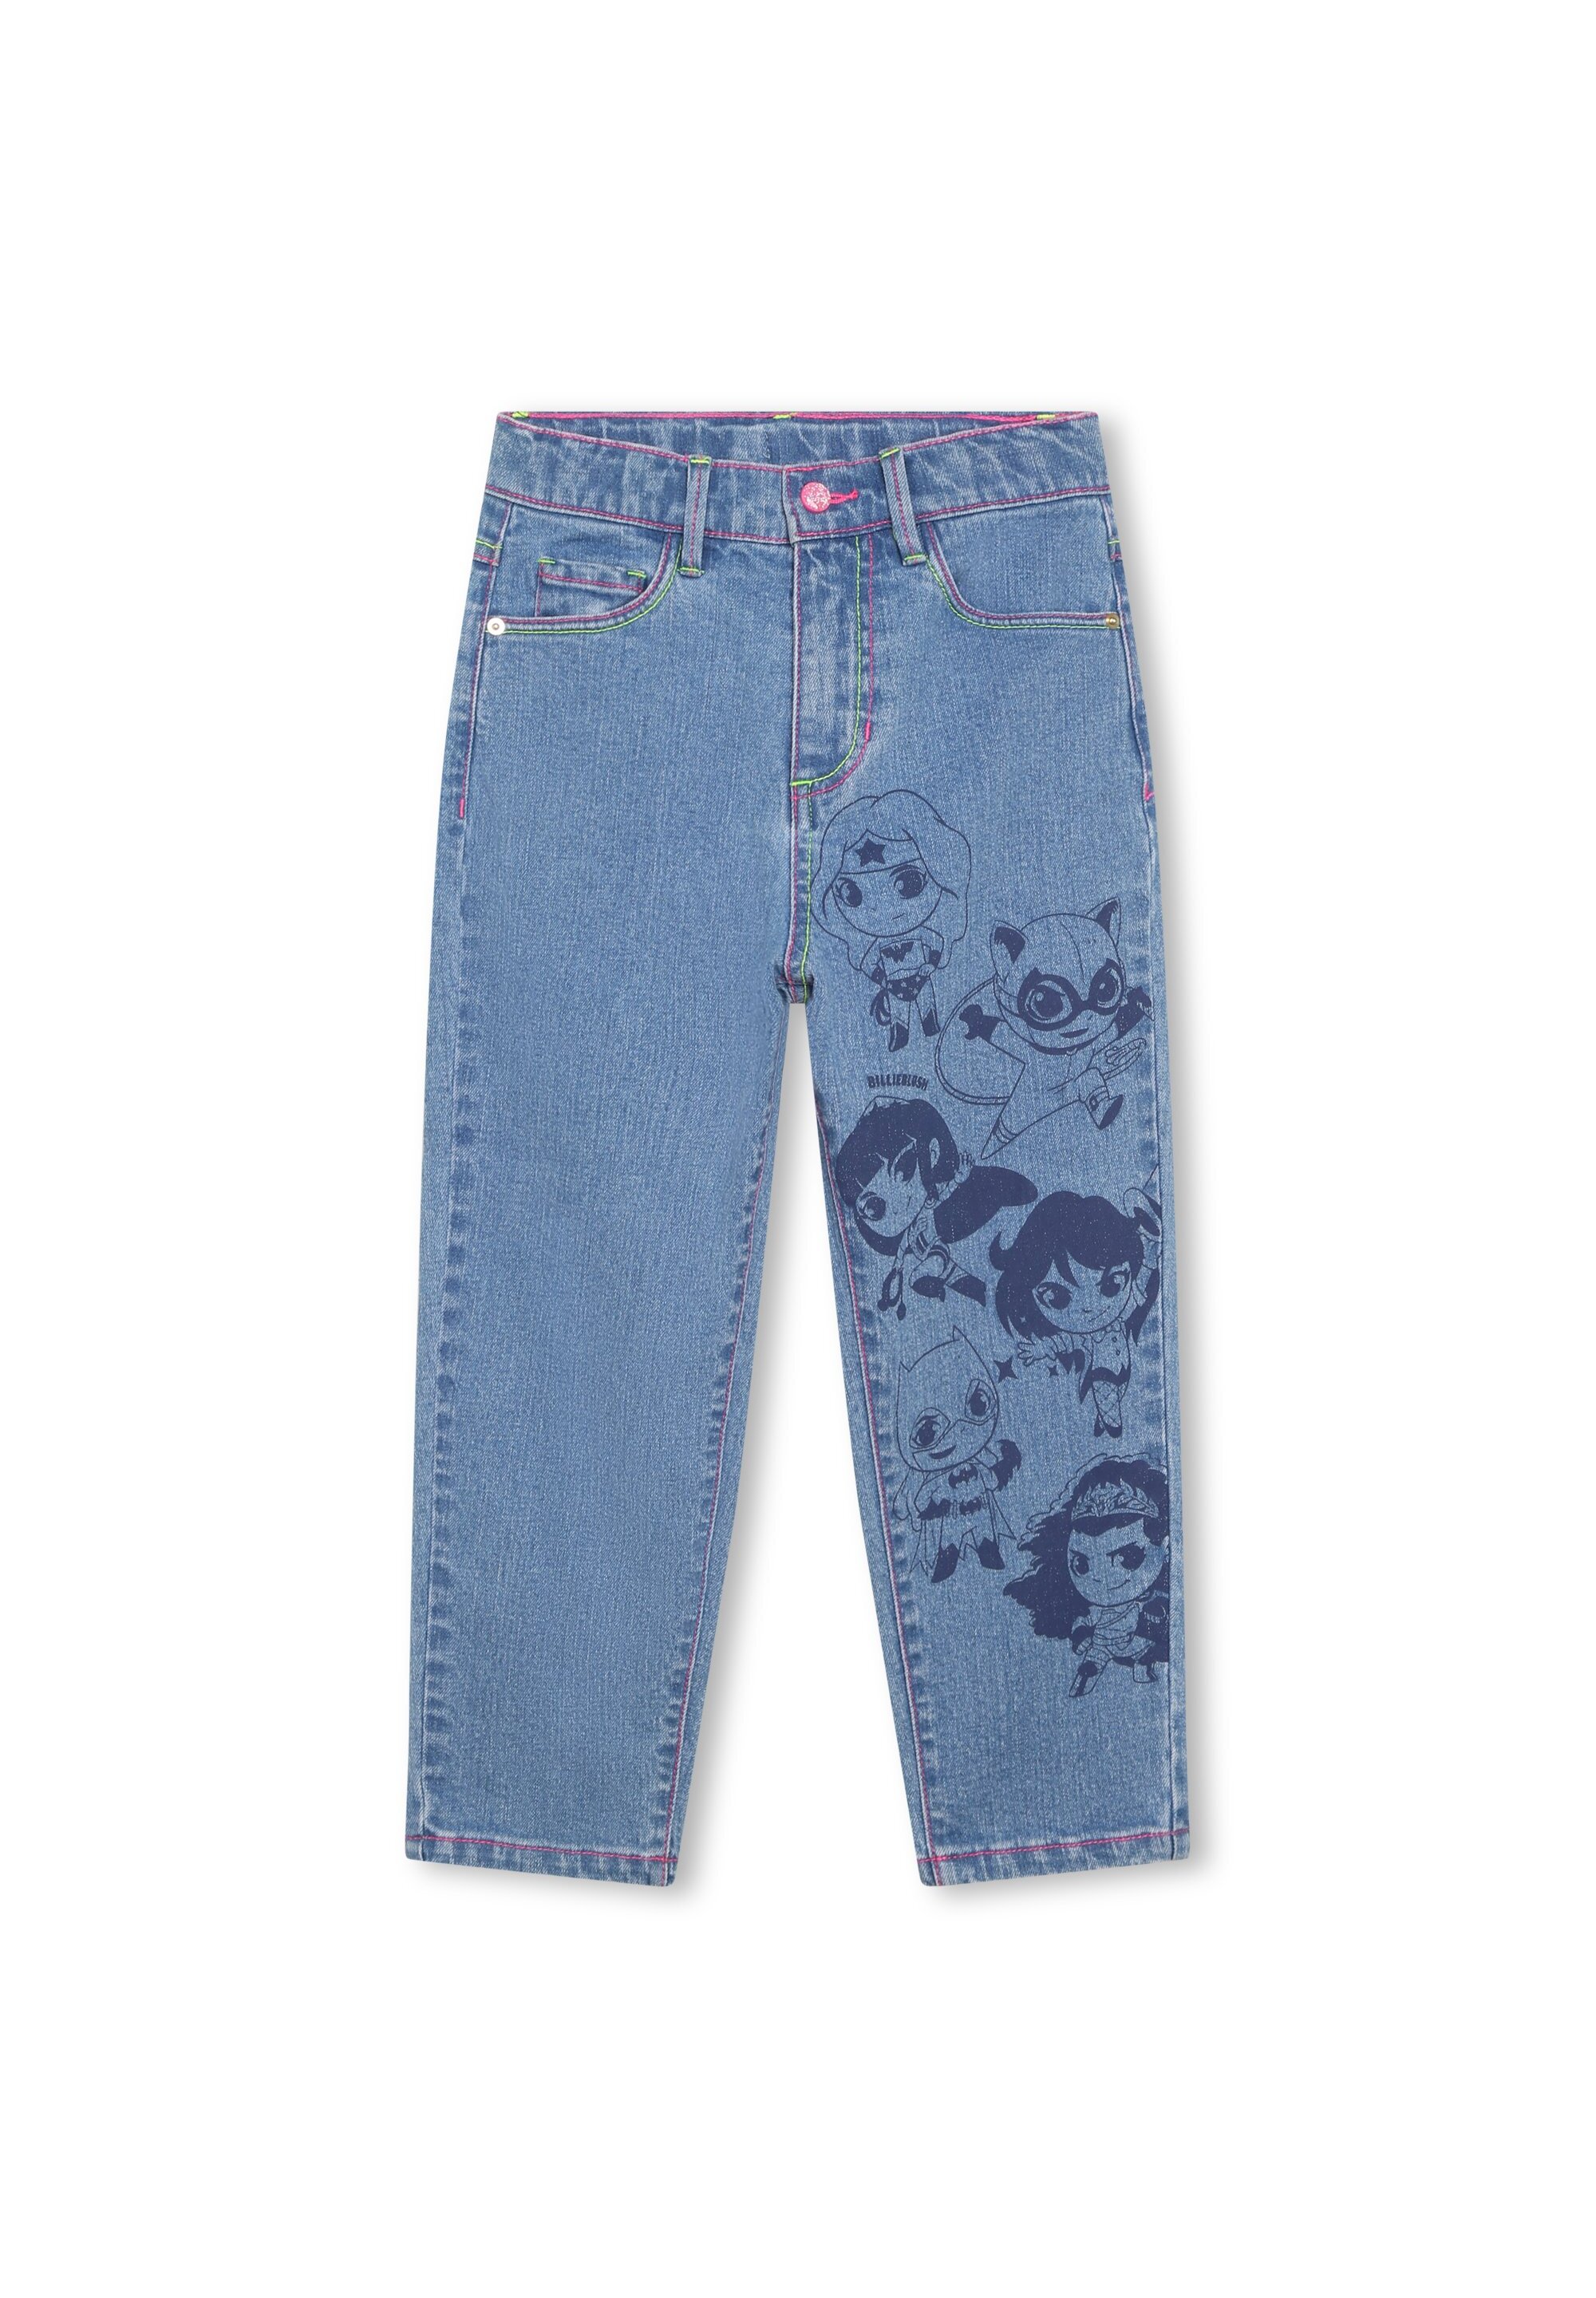 5-pocket-jeans mit motiv BILLIEBLUSH Für MÄDCHEN